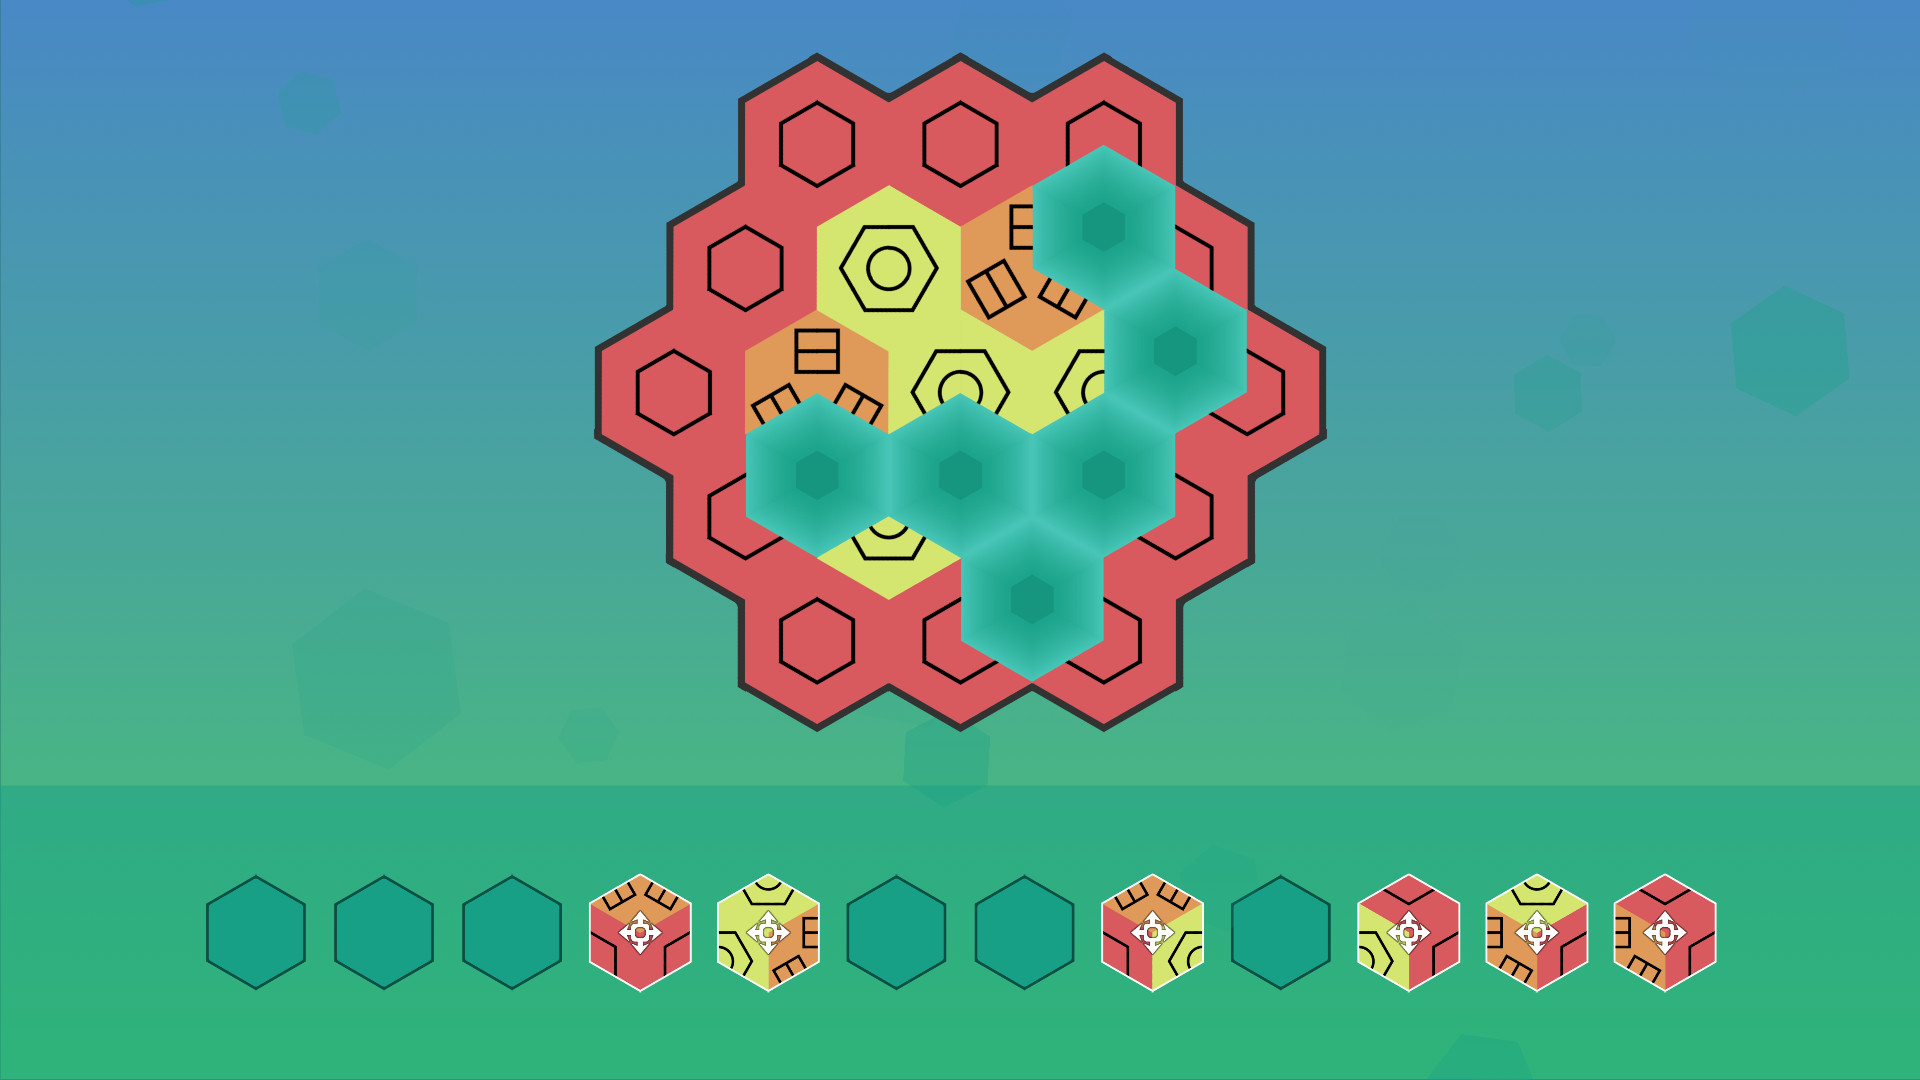 Aurora Hex - Pattern Puzzles screenshot